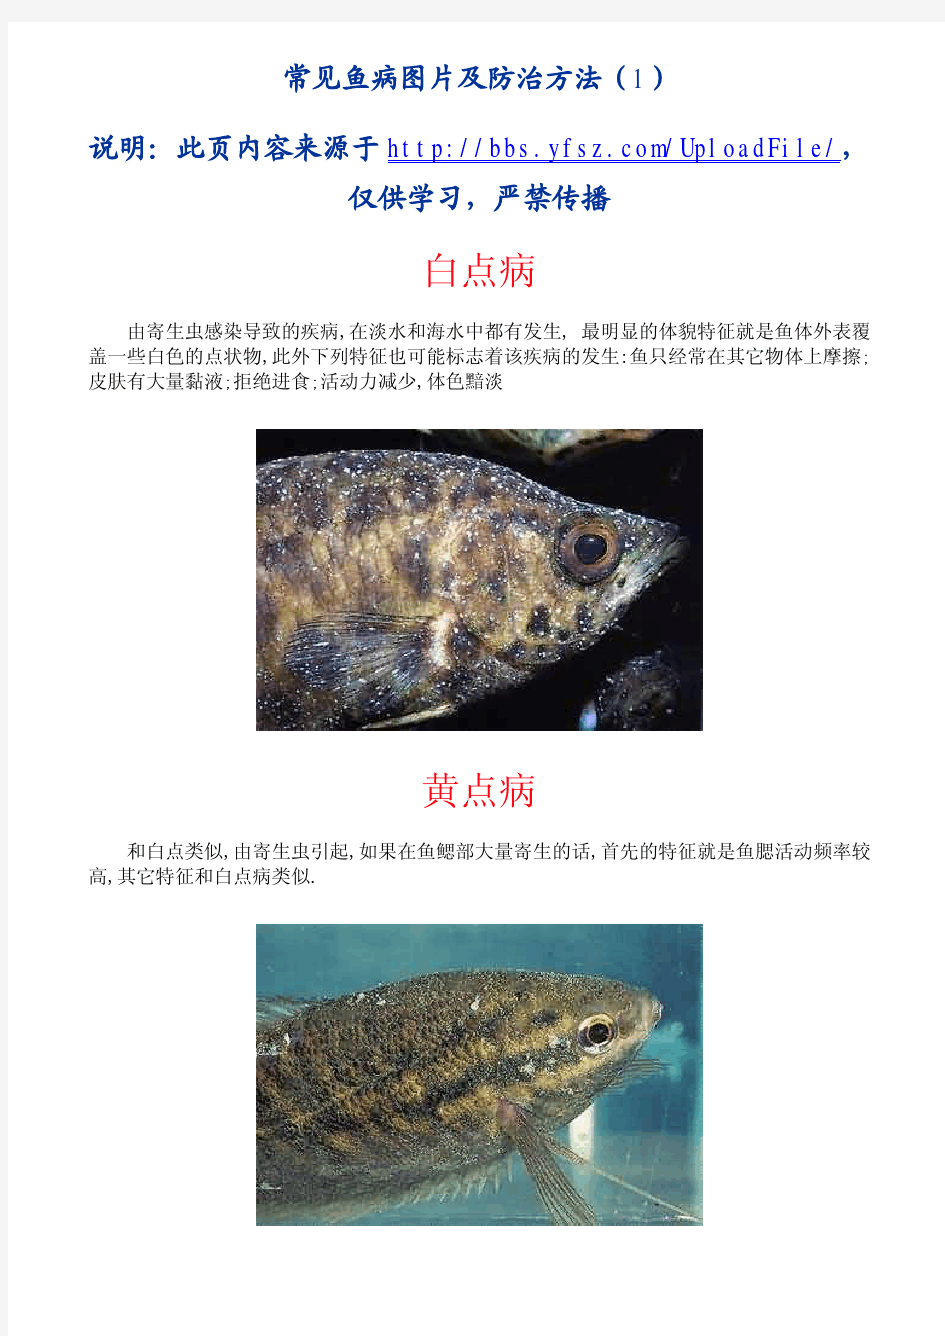 常见鱼病图片及防治方法(上)[1]